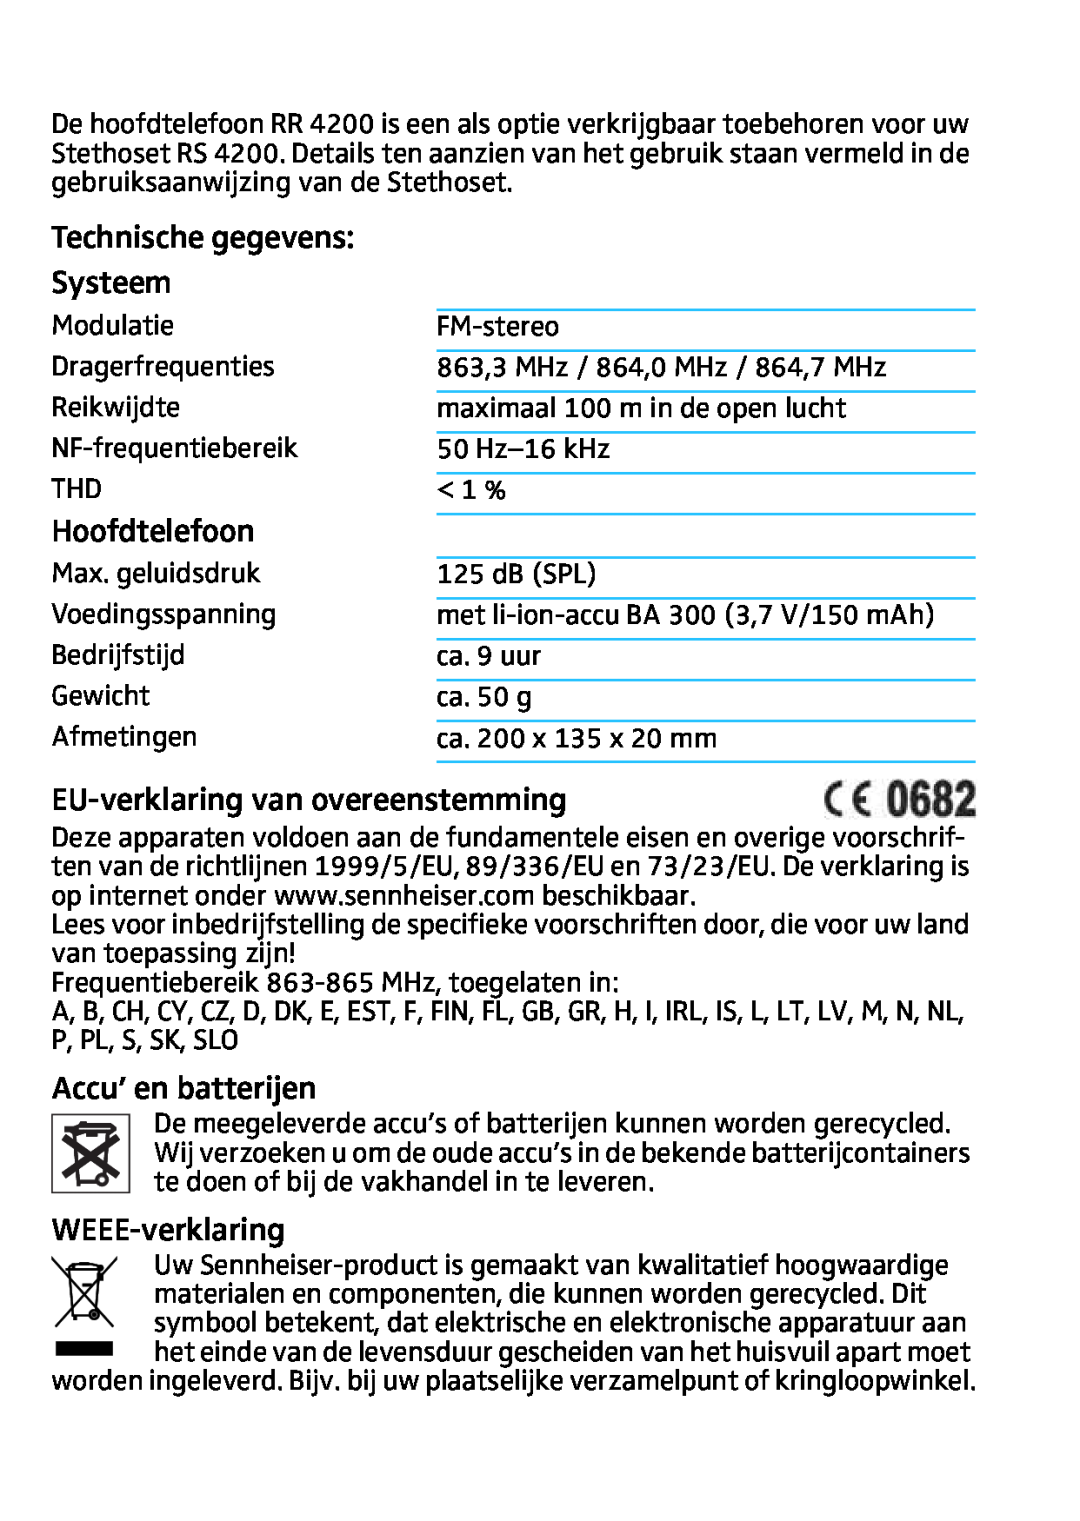 Sennheiser RR4200 manual Technische gegevens Systeem, Hoofdtelefoon, EU-verklaringvan overeenstemming, Accu’ en batterijen 